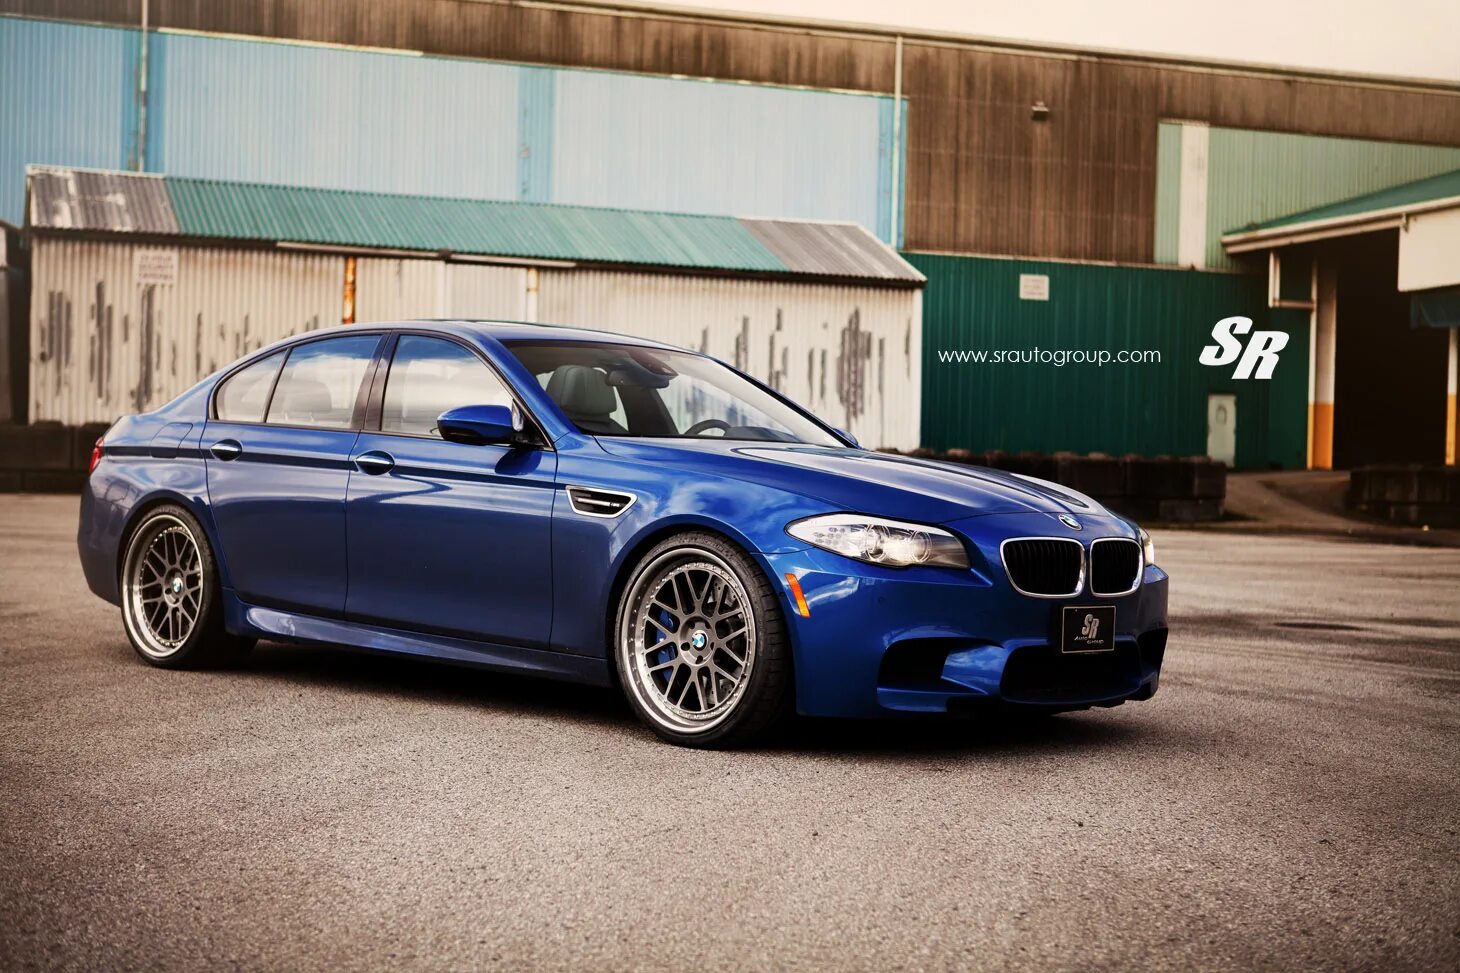 Bmw m 5 10. BMW m5 f10. BMW 5 f10. BMW m3 f10. BMW m5 f10 Blue.